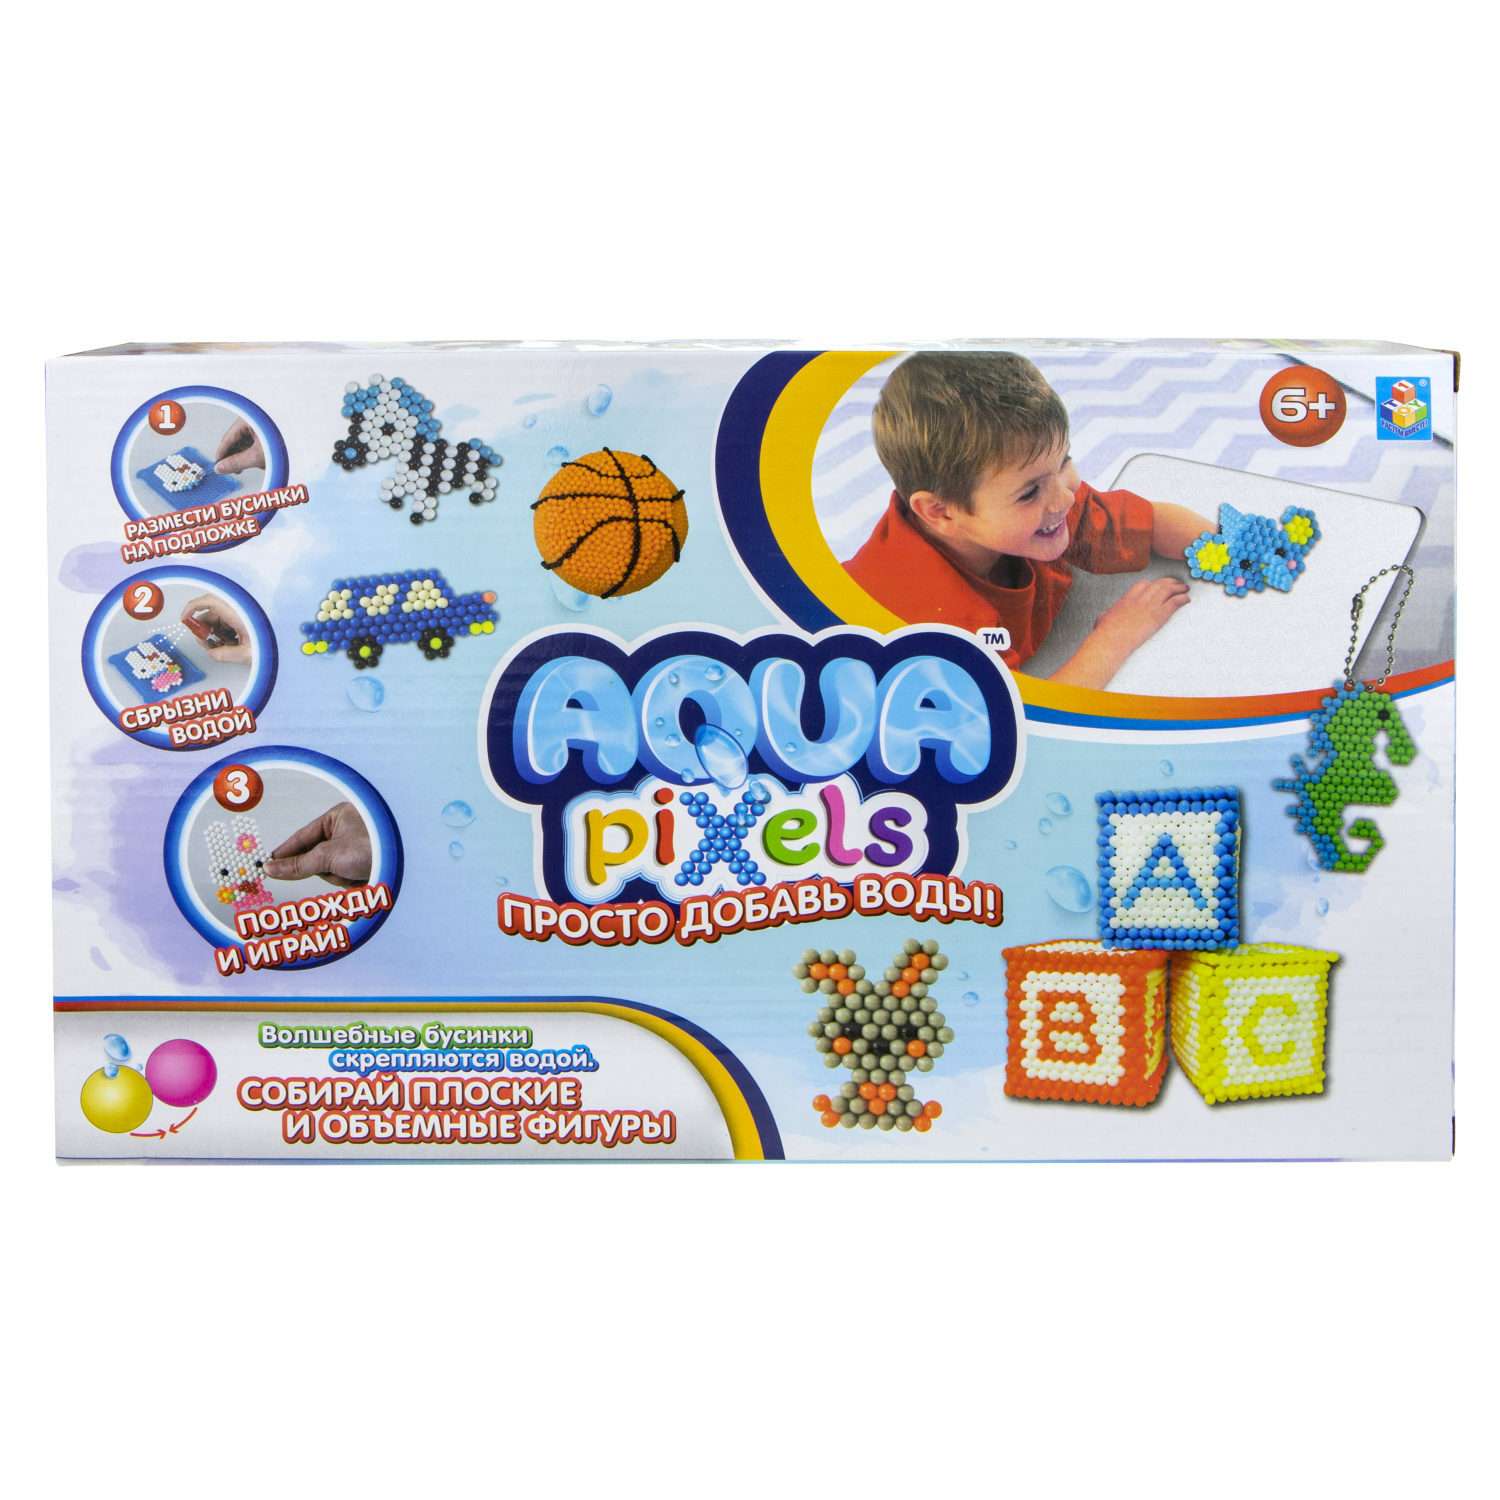 Набор для творчества 1TOY Аквамозаика Aqua pixels Веселые животные брелоки в коробке - фото 2